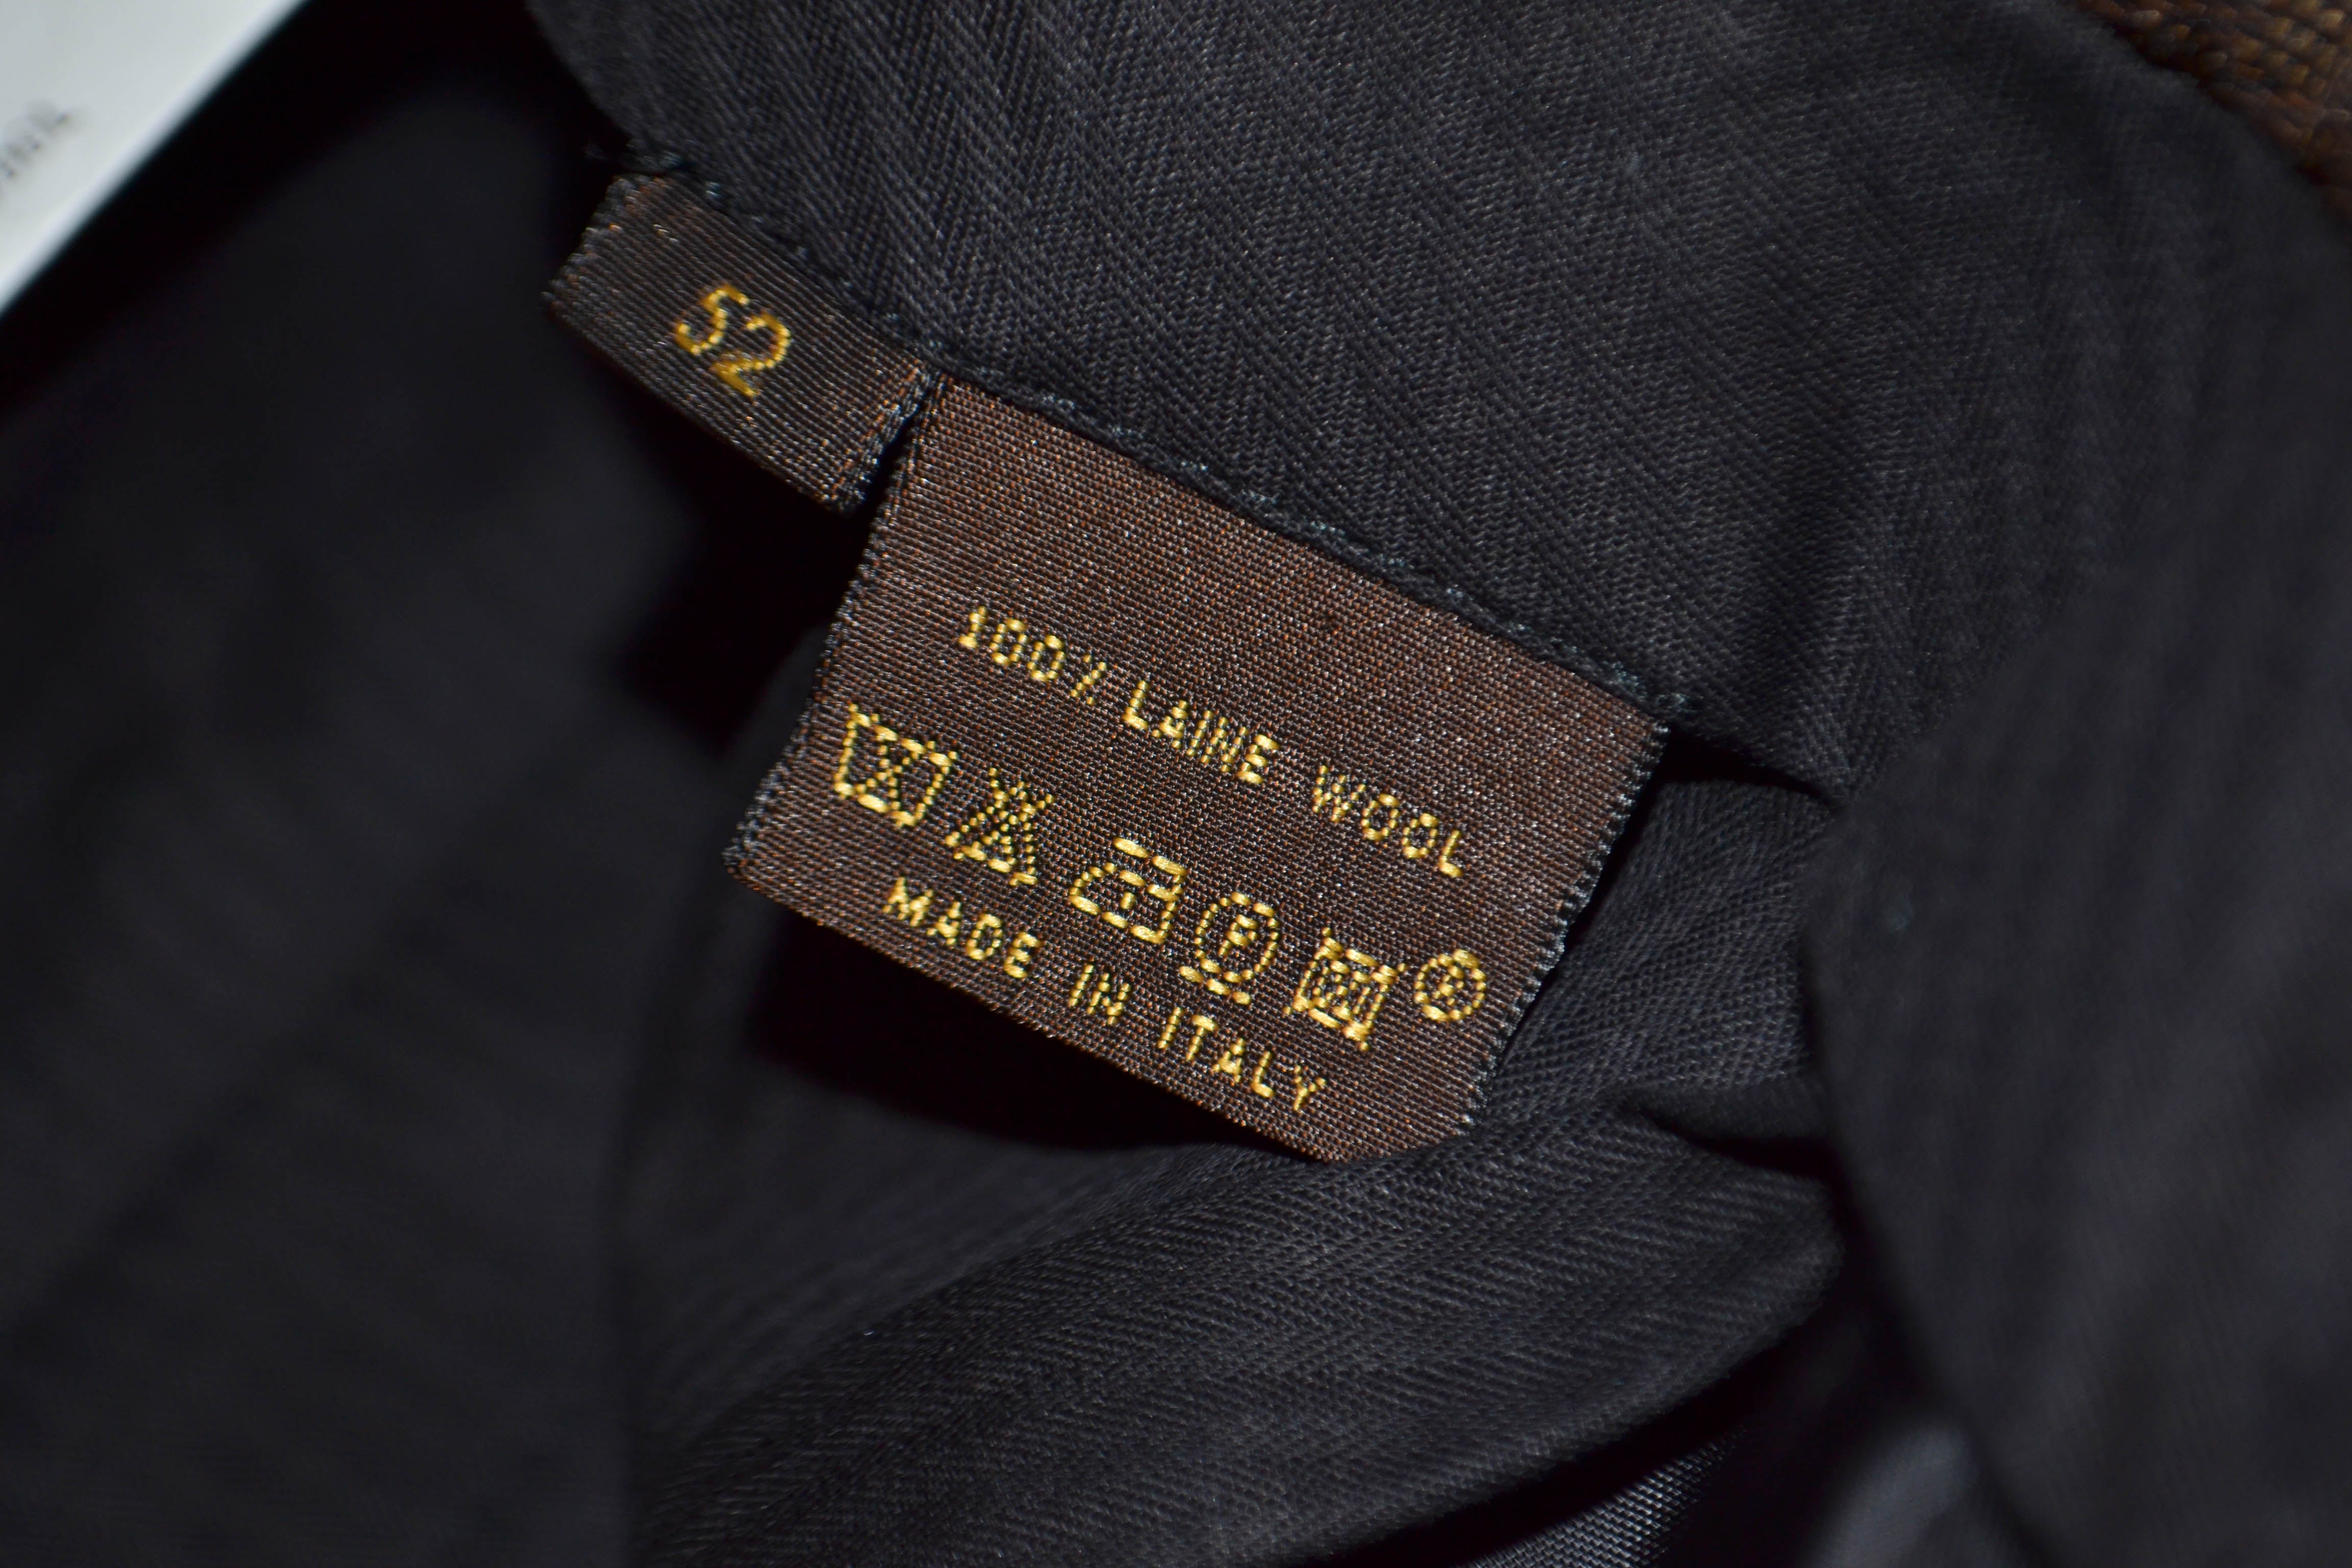 Paris Station Shop Authentic Louis Vuitton Grey Men's Pants Size 50